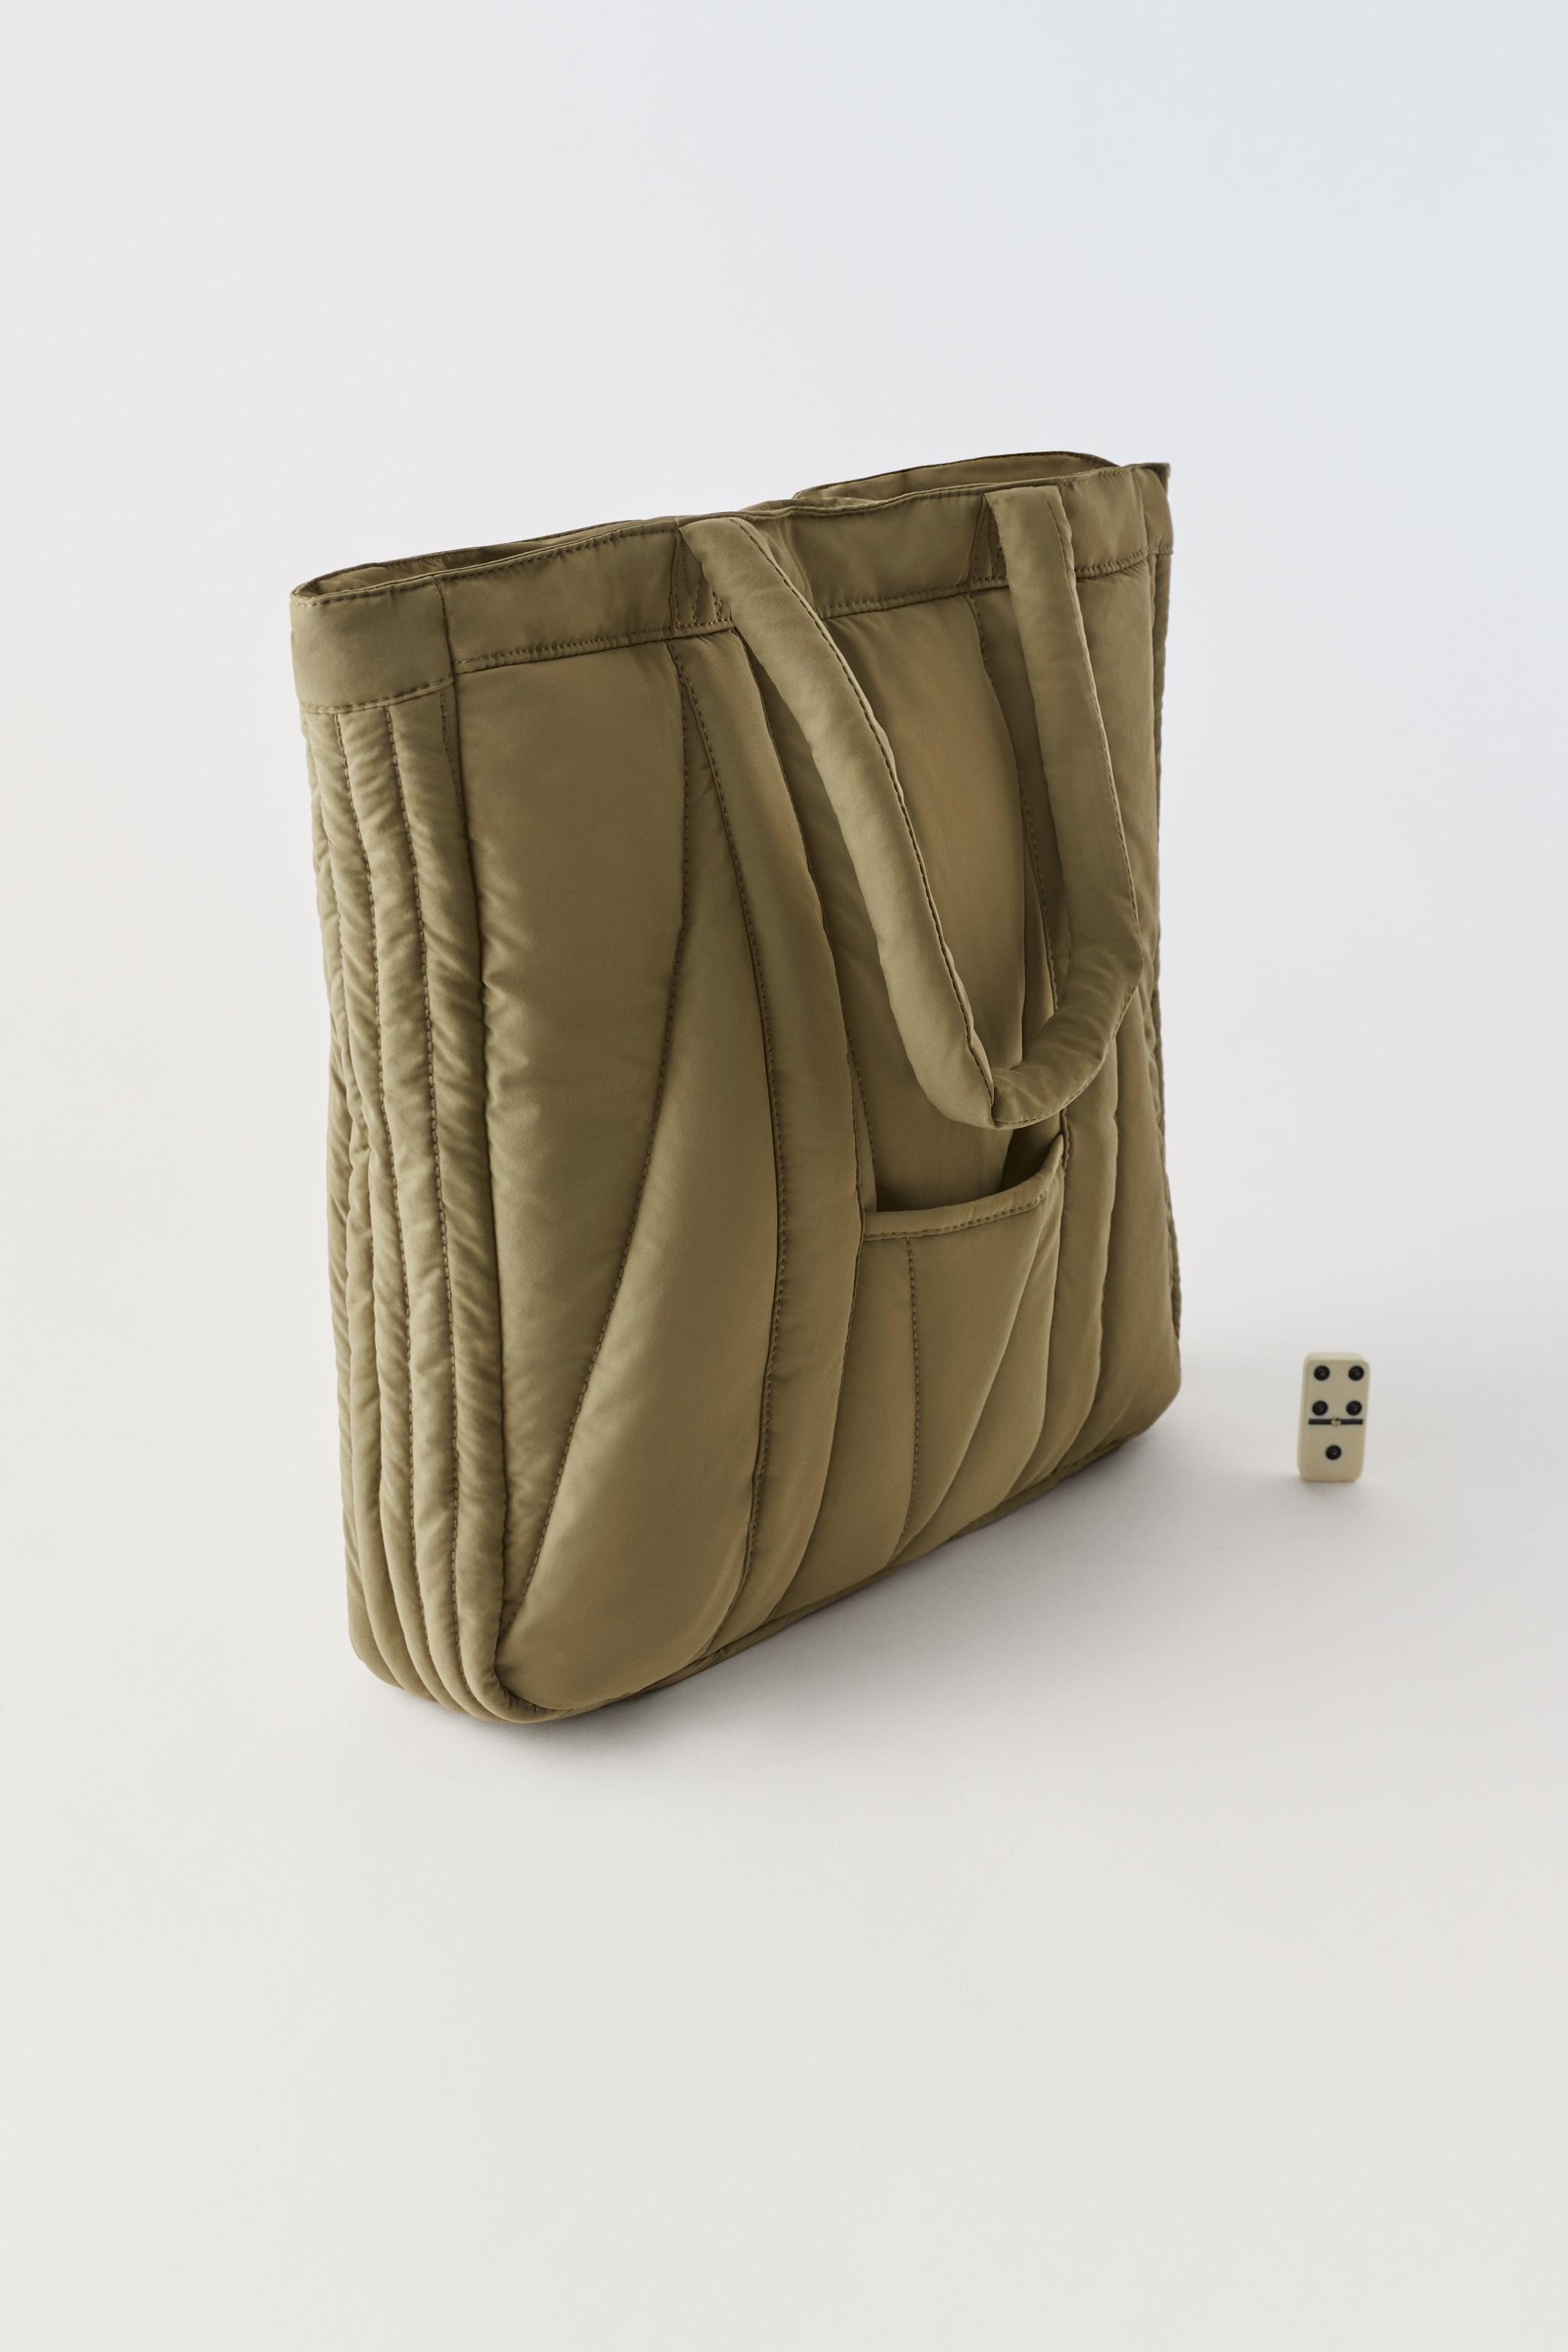 El bolso acolchado (que Zara tiene en todas sus versiones) es el